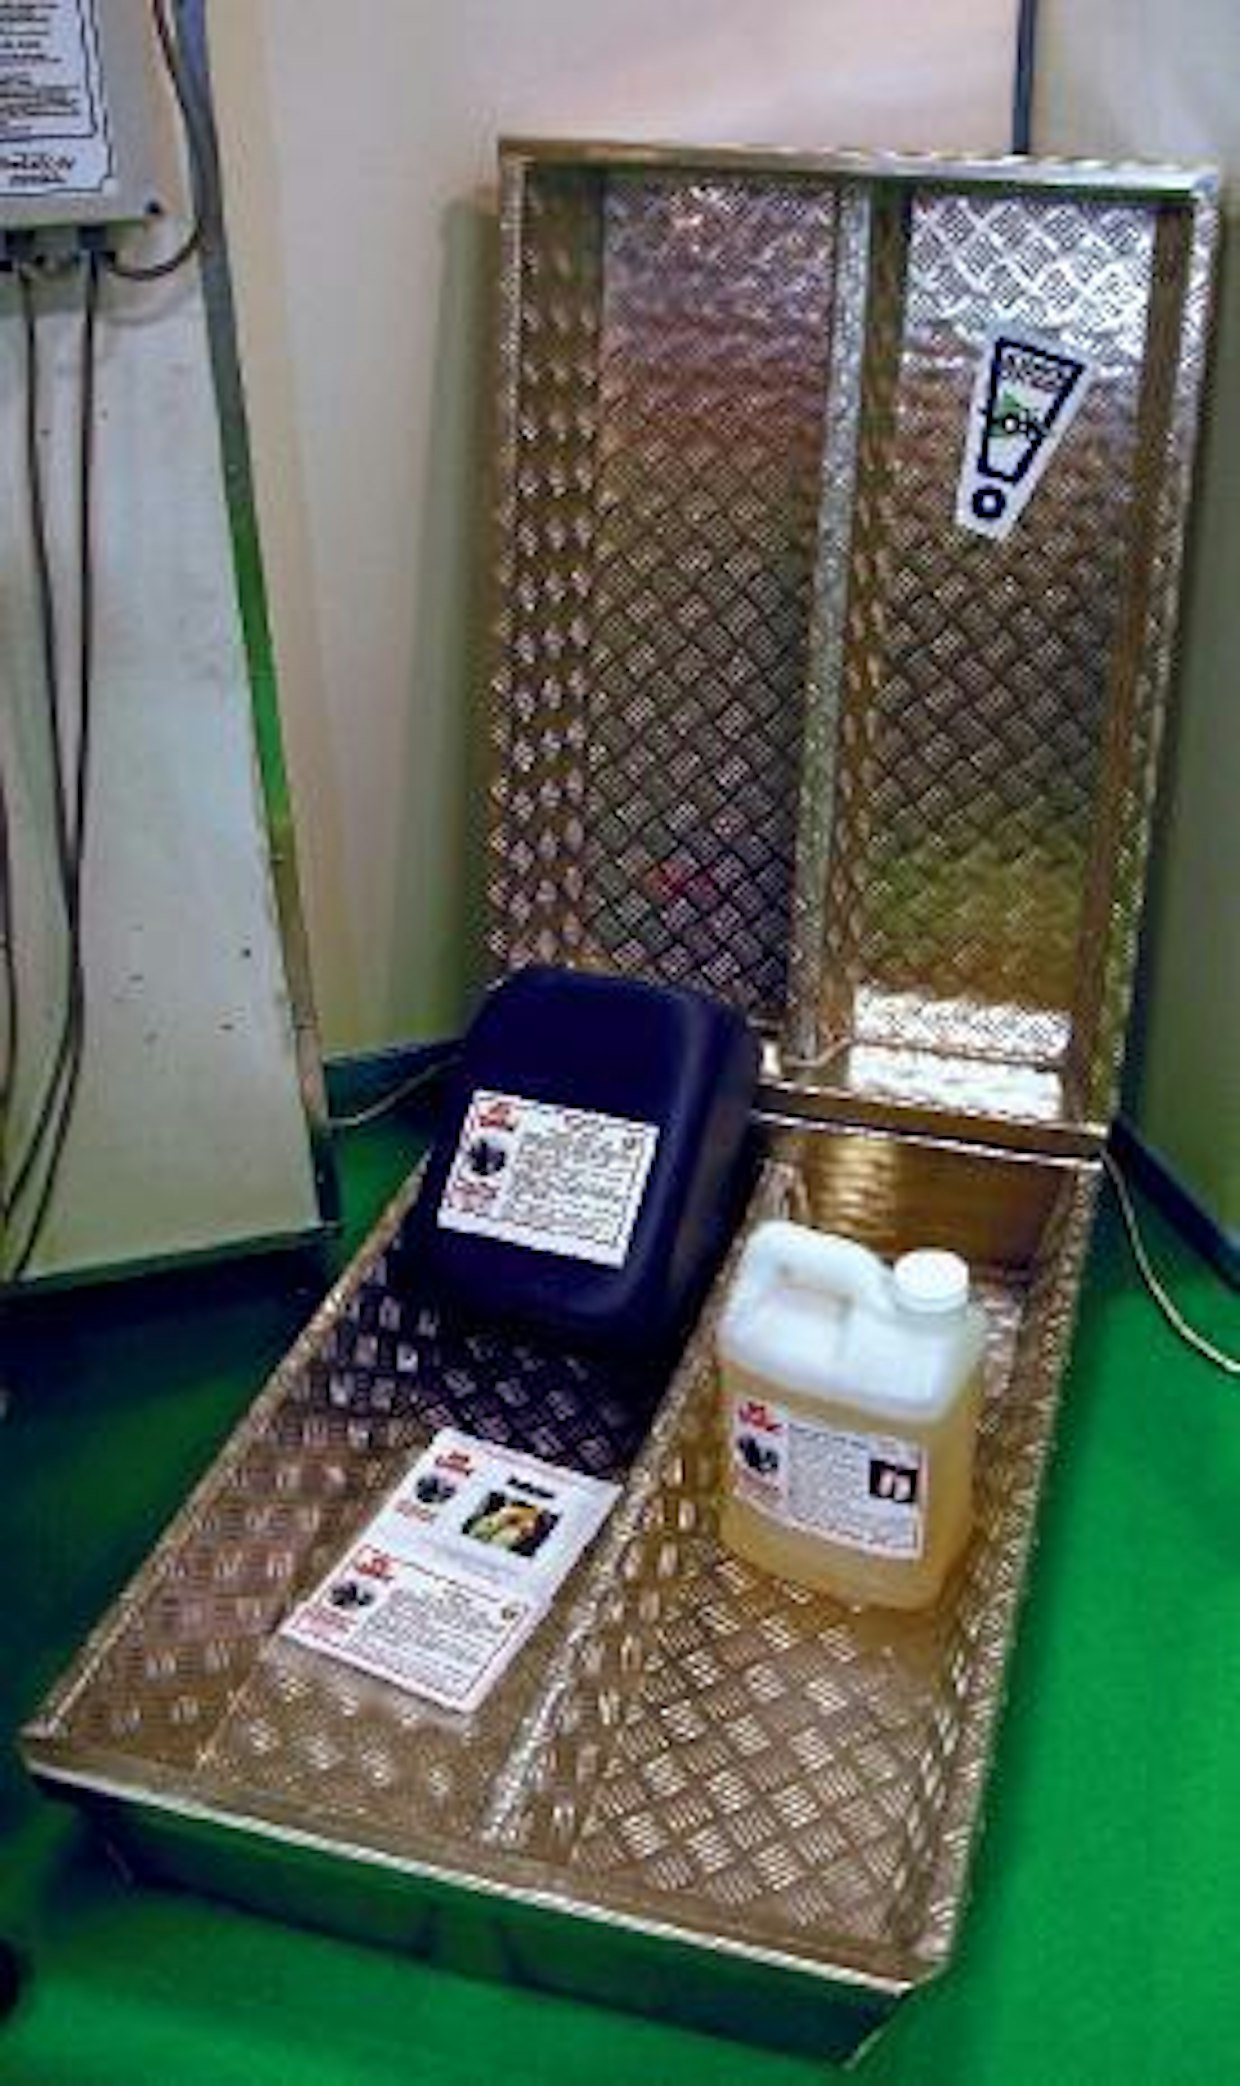 FinnLacton uusi sorkkahuuhtelu- ja desinfiointiallas on valmistettu kestävästä ja kevyestä merialumiinista. Altaan pituus on 1 metri, ja niitä voidaan asettaa peräkkäin tarpeen mukaan. Desinfiointiaineiksi suositellaan uusia biohajoavia aineita.